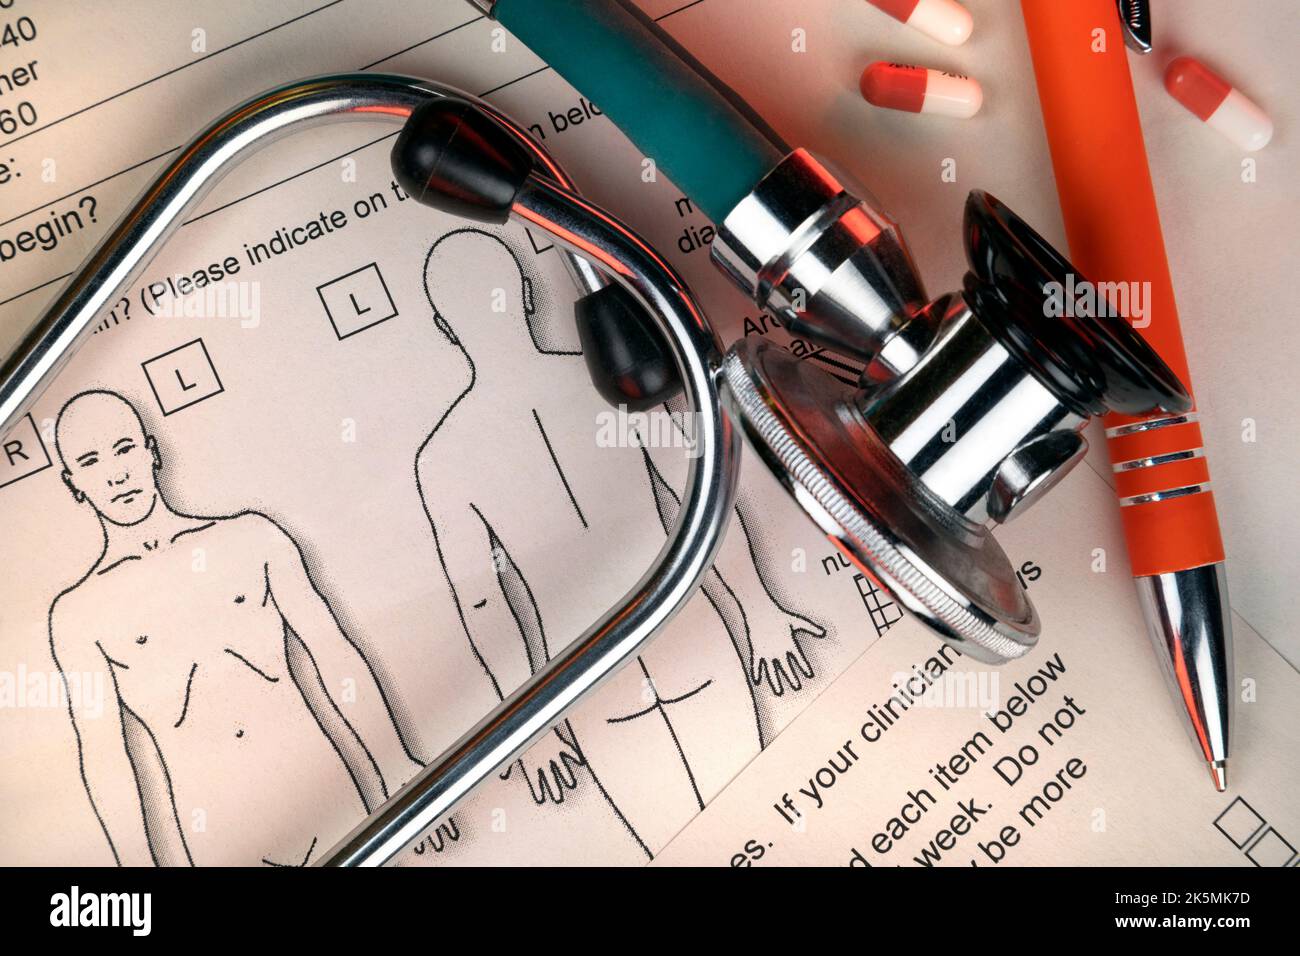 Medicina: Estetoscopio y notas clínicas en el escritorio de un médico. Foto de stock